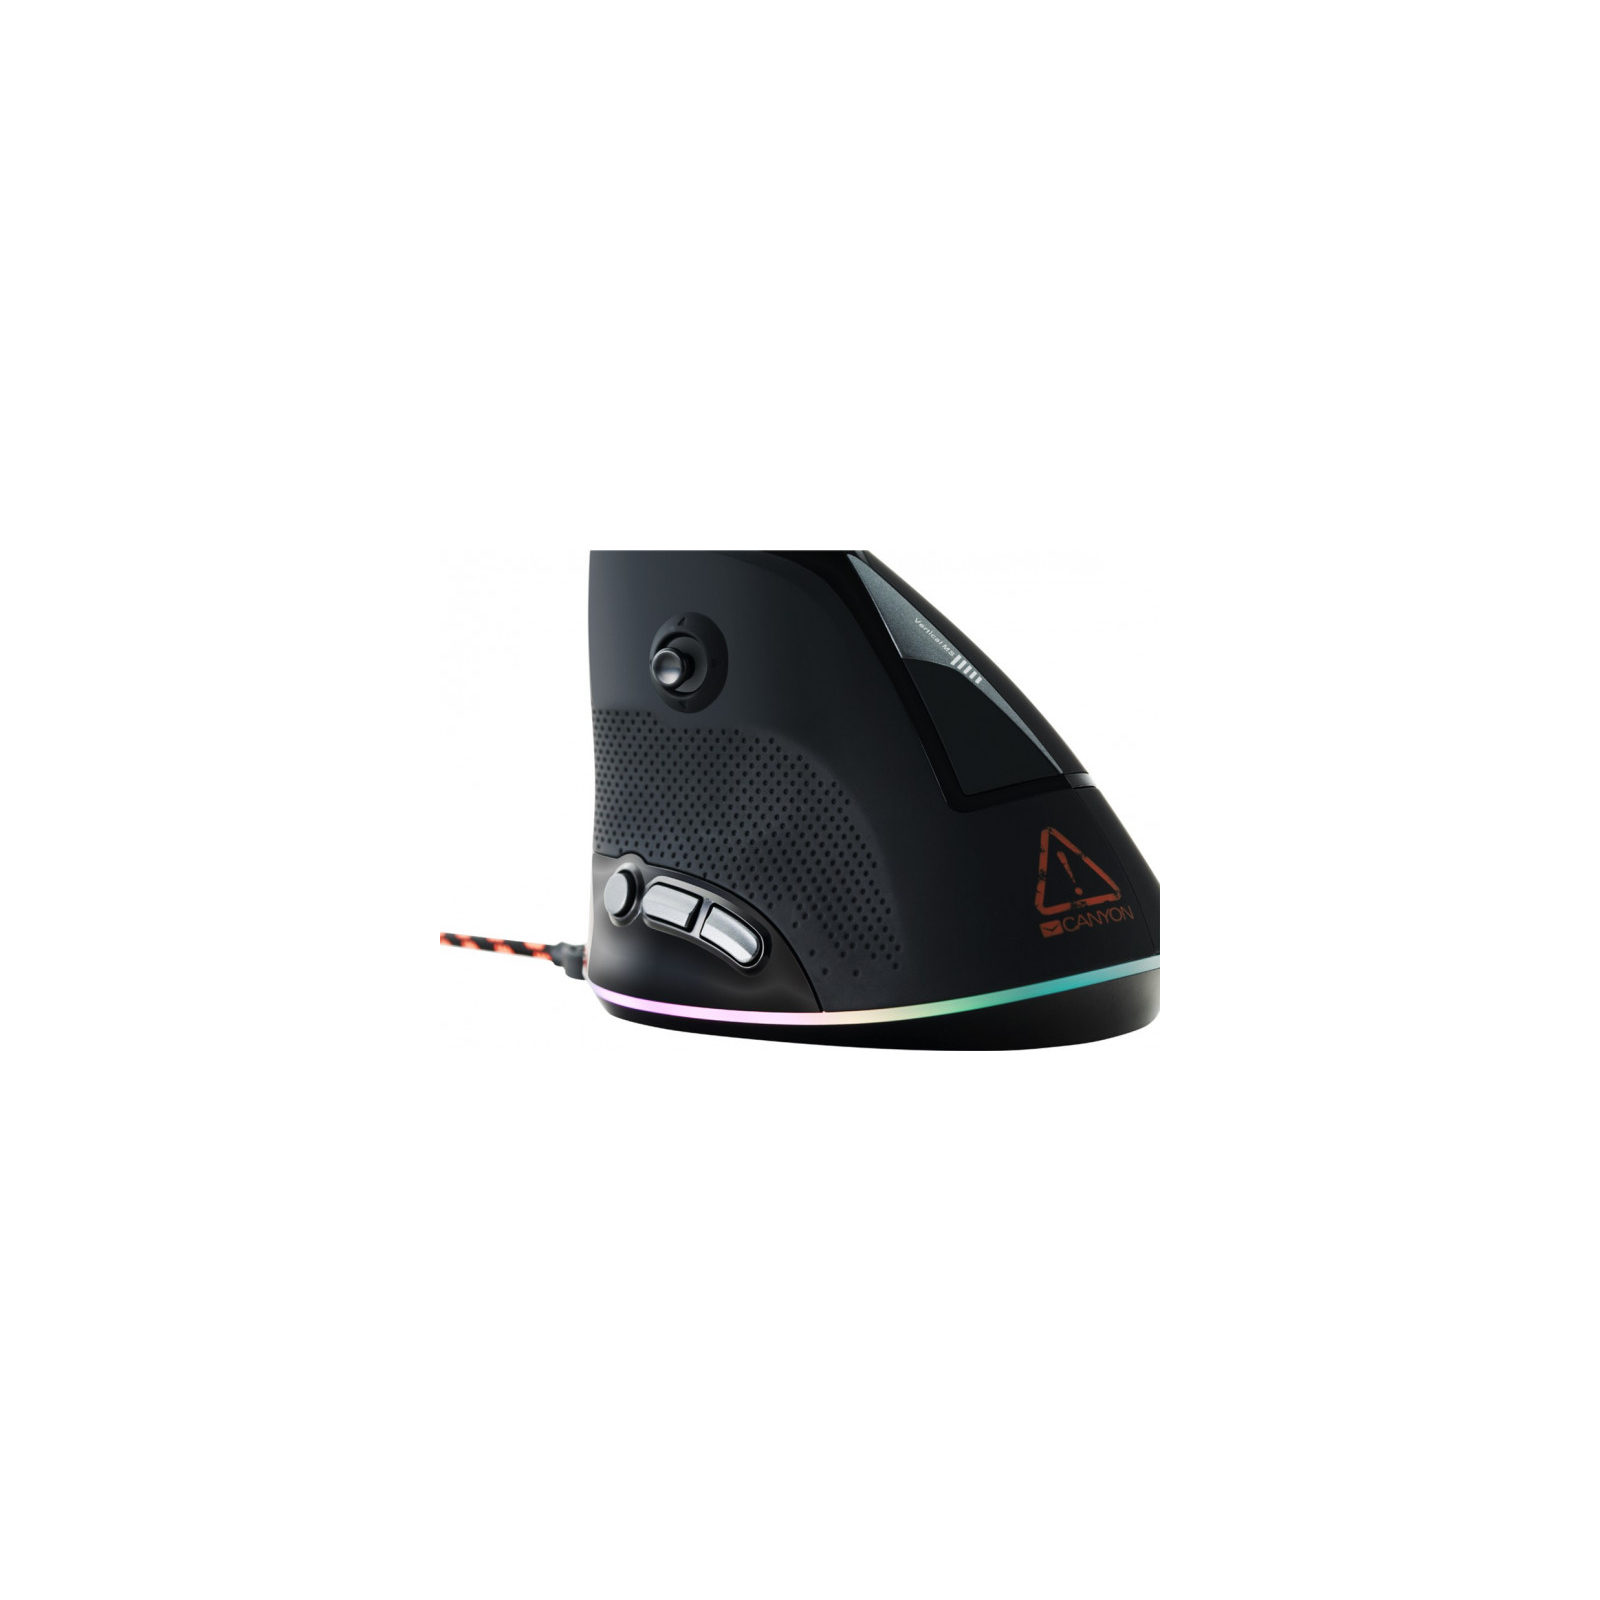 Мышка Canyon Emisat USB Black (CND-SGM14RGB) изображение 4